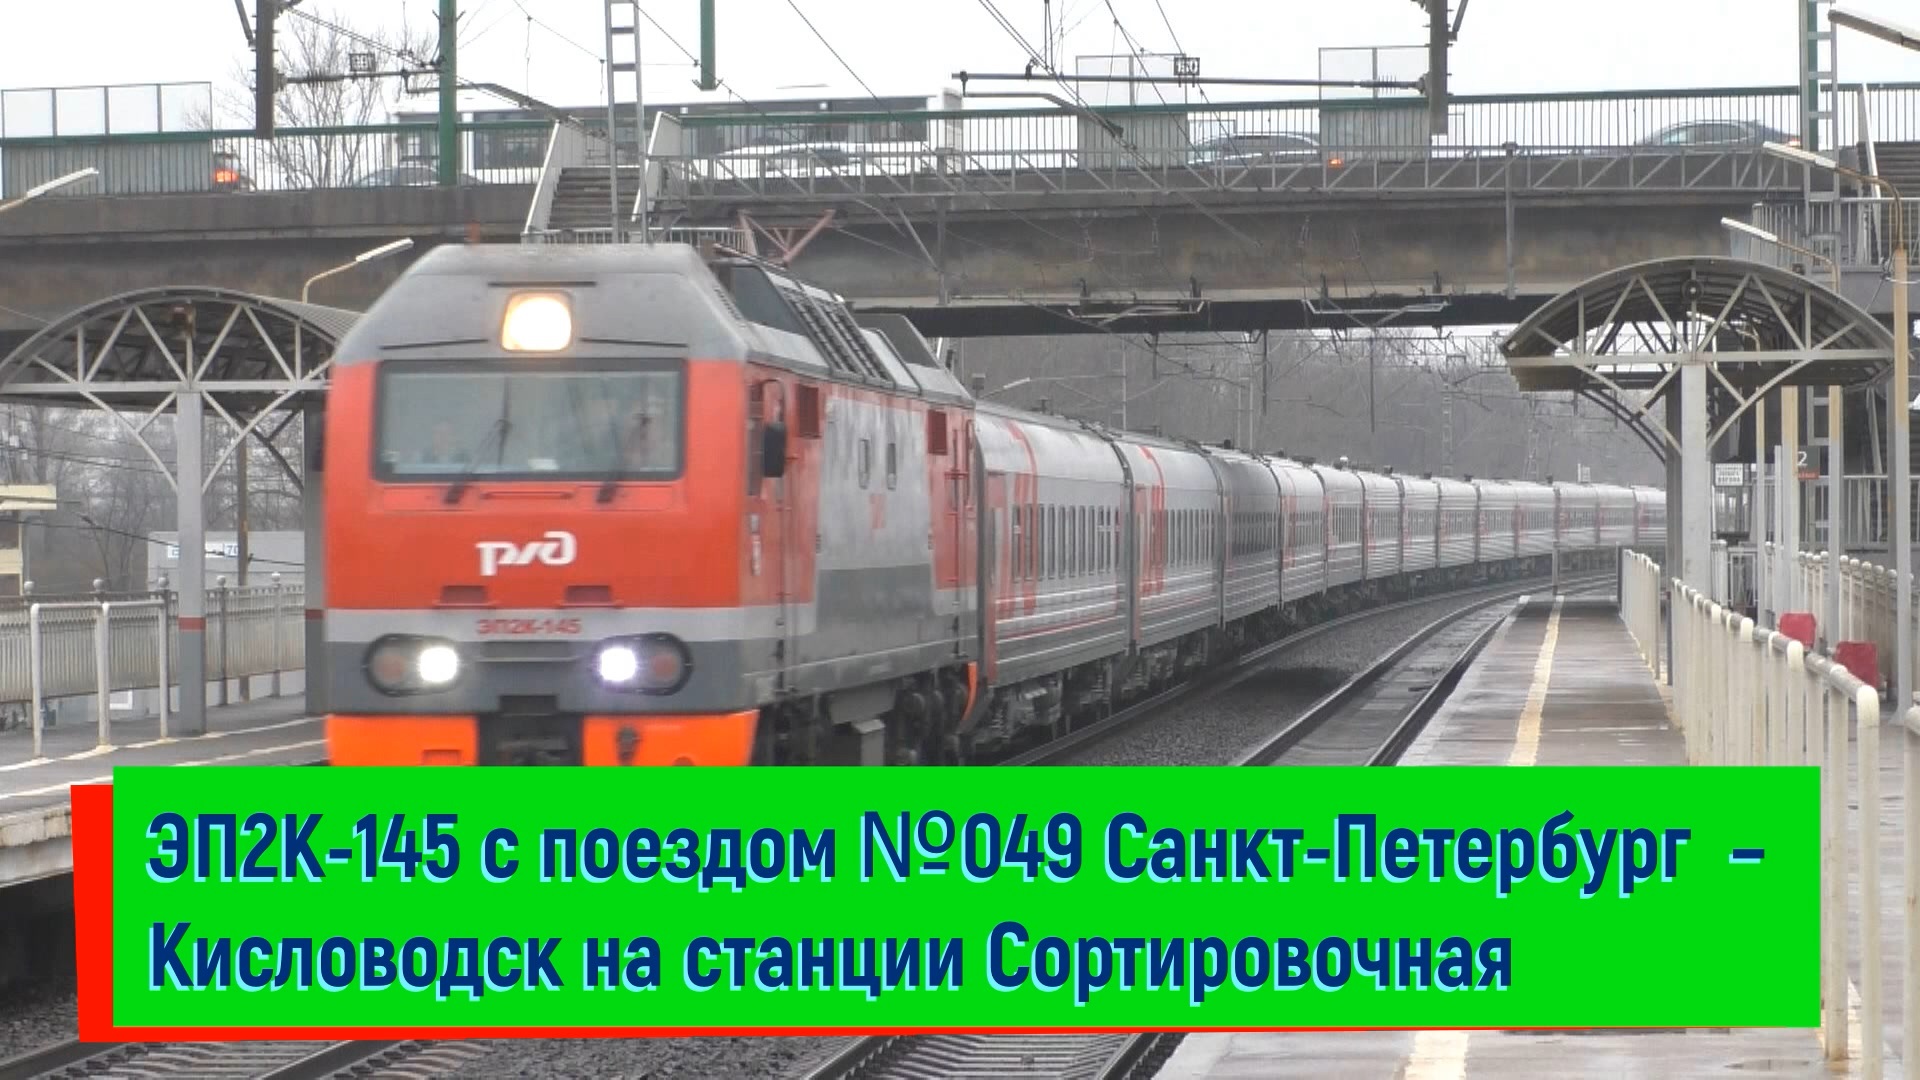 ЭП2К-145 с поездом №049 Санкт-Петербург – Кисловодск на станции Сортировочная